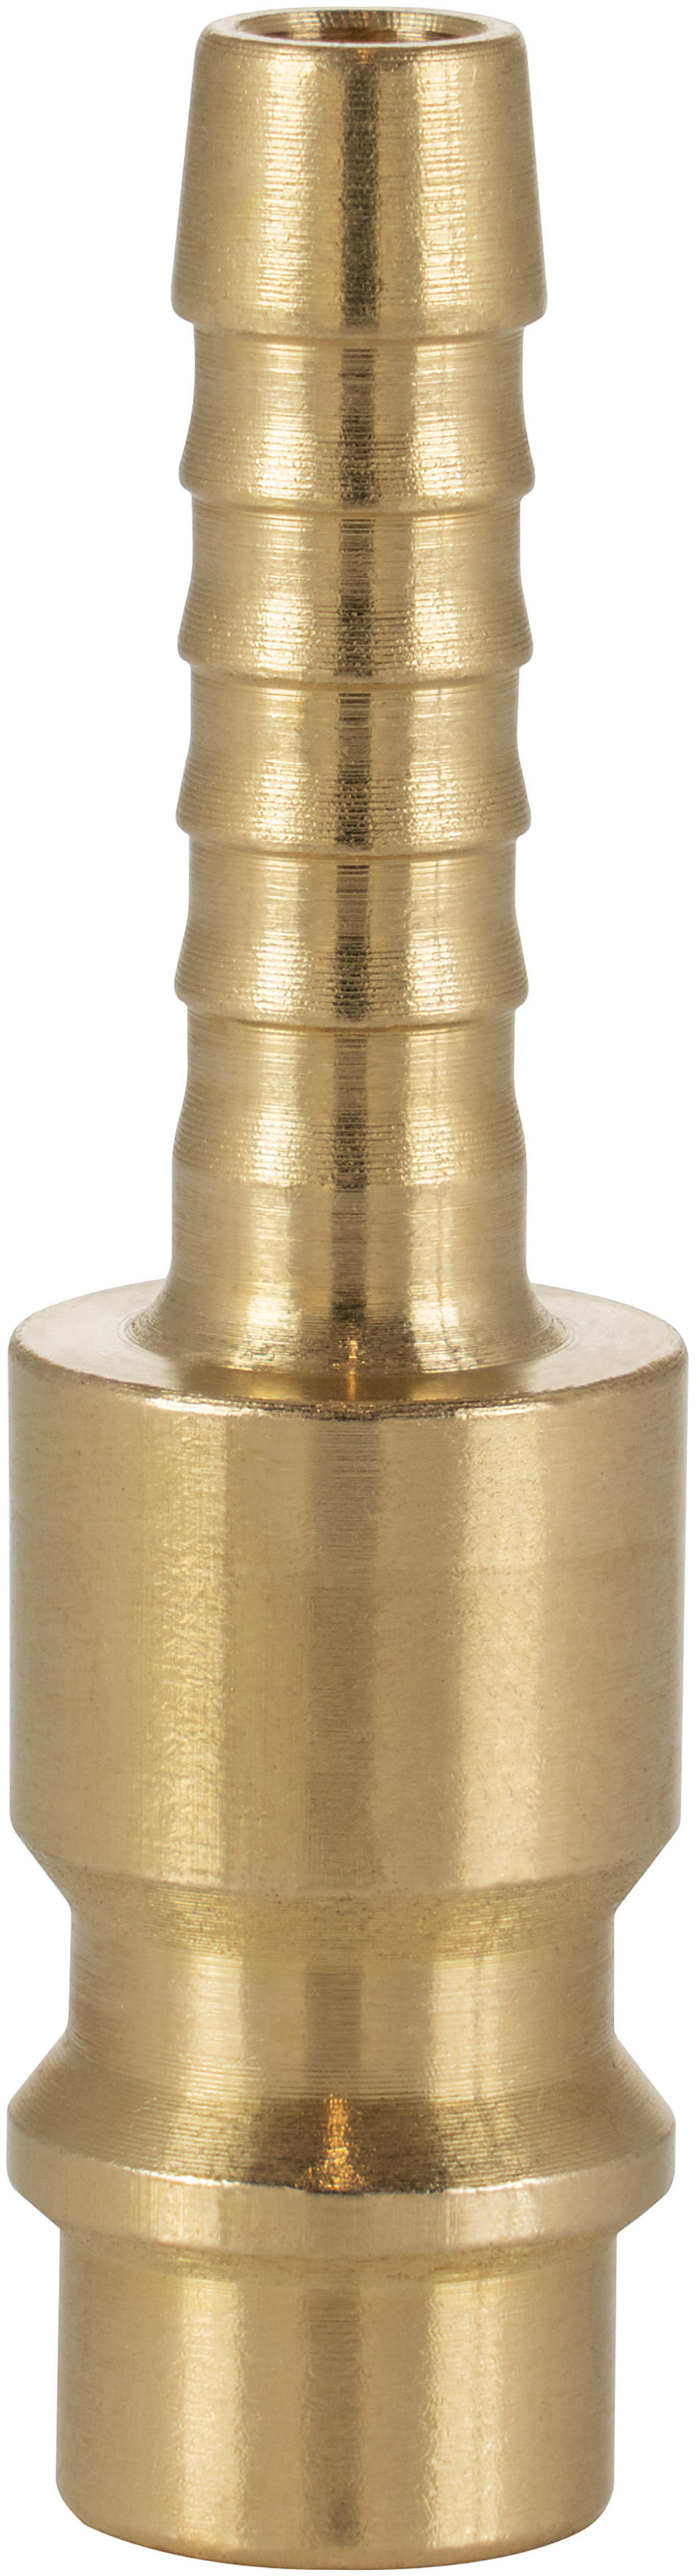 Druckluft-Kupplung Stecknippel NW 7,2 mit Tülle Ø 6,5mm